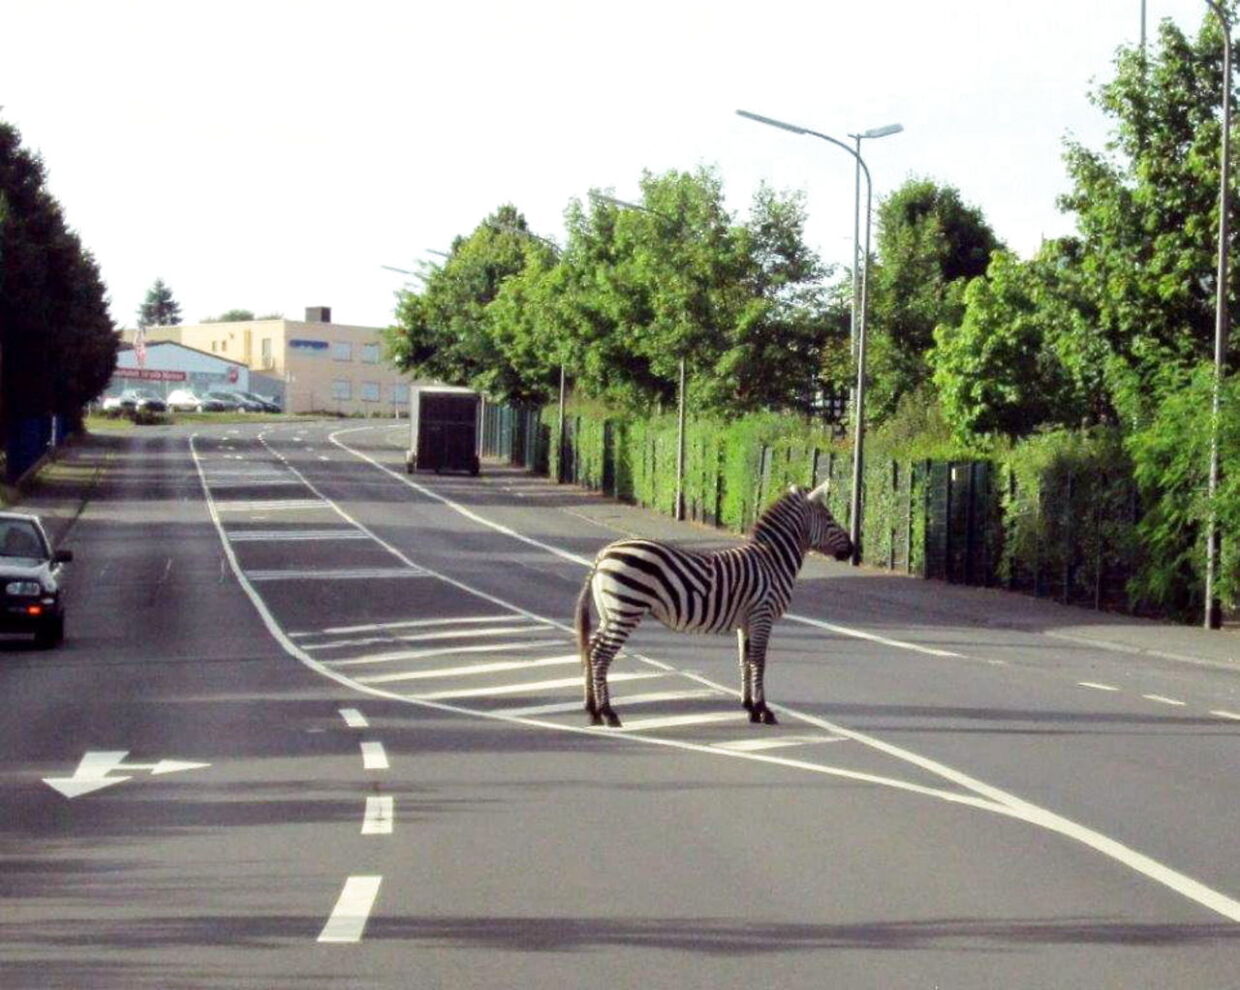 Зебра переходя дорогу. Зебра. Зебра на дороге. Зебра пешеходный переход. Животные переходят дорогу.